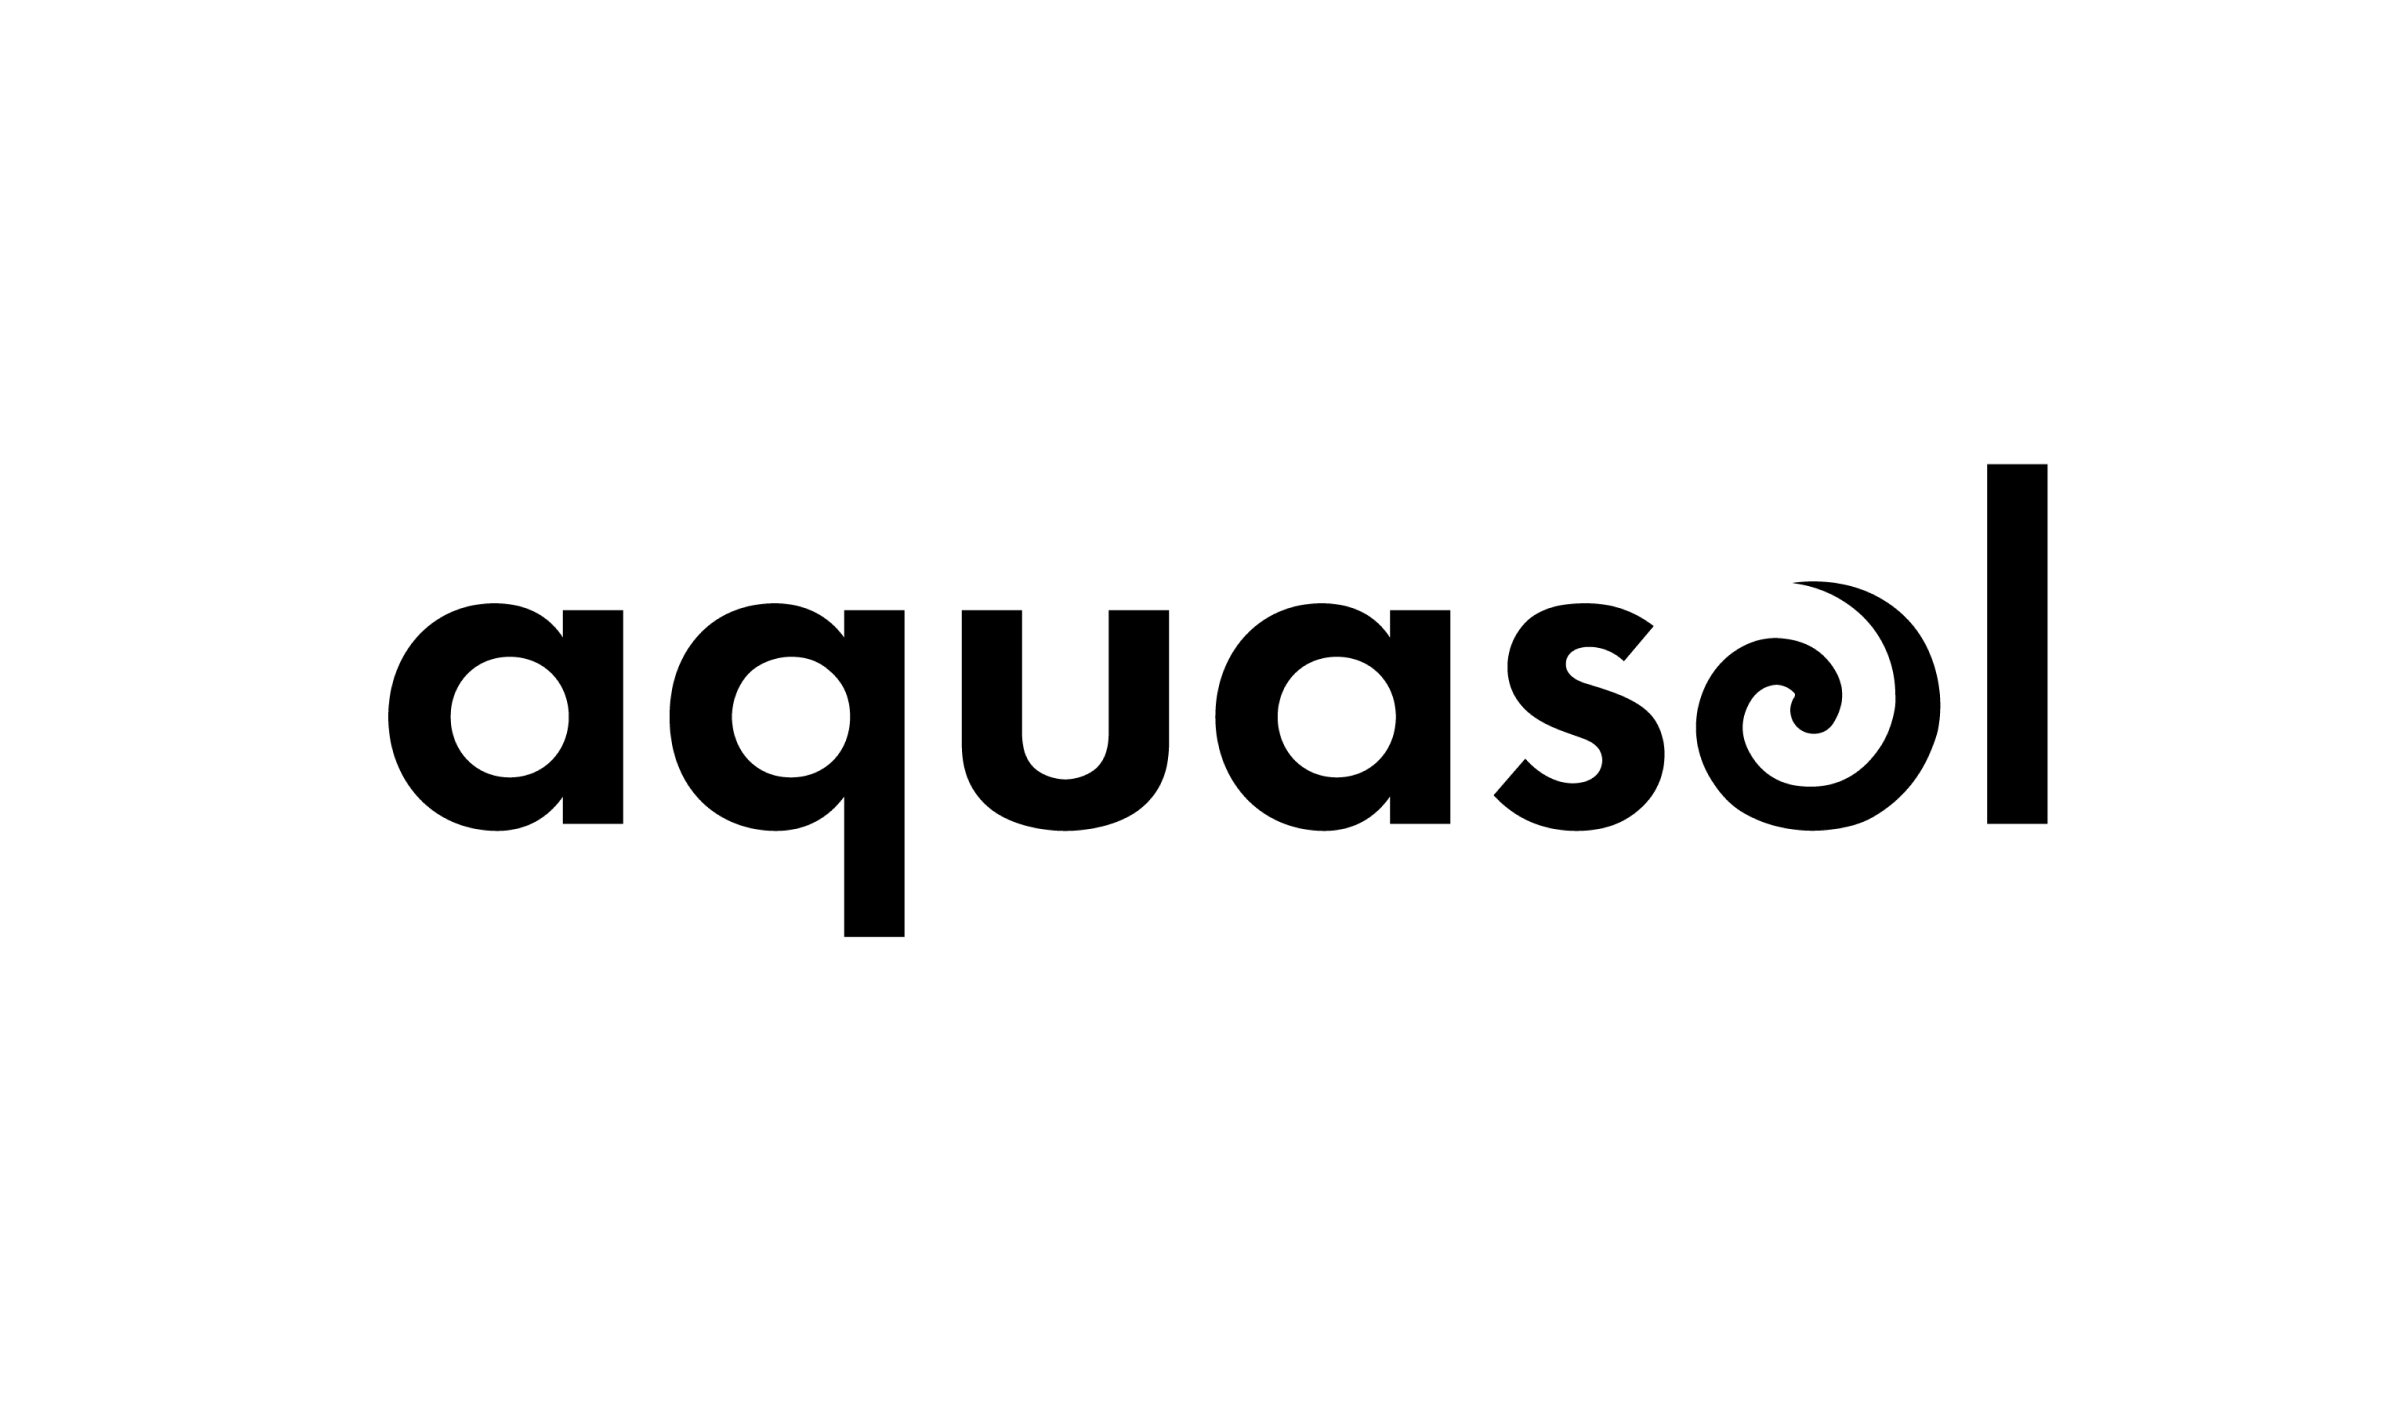 Aquasol